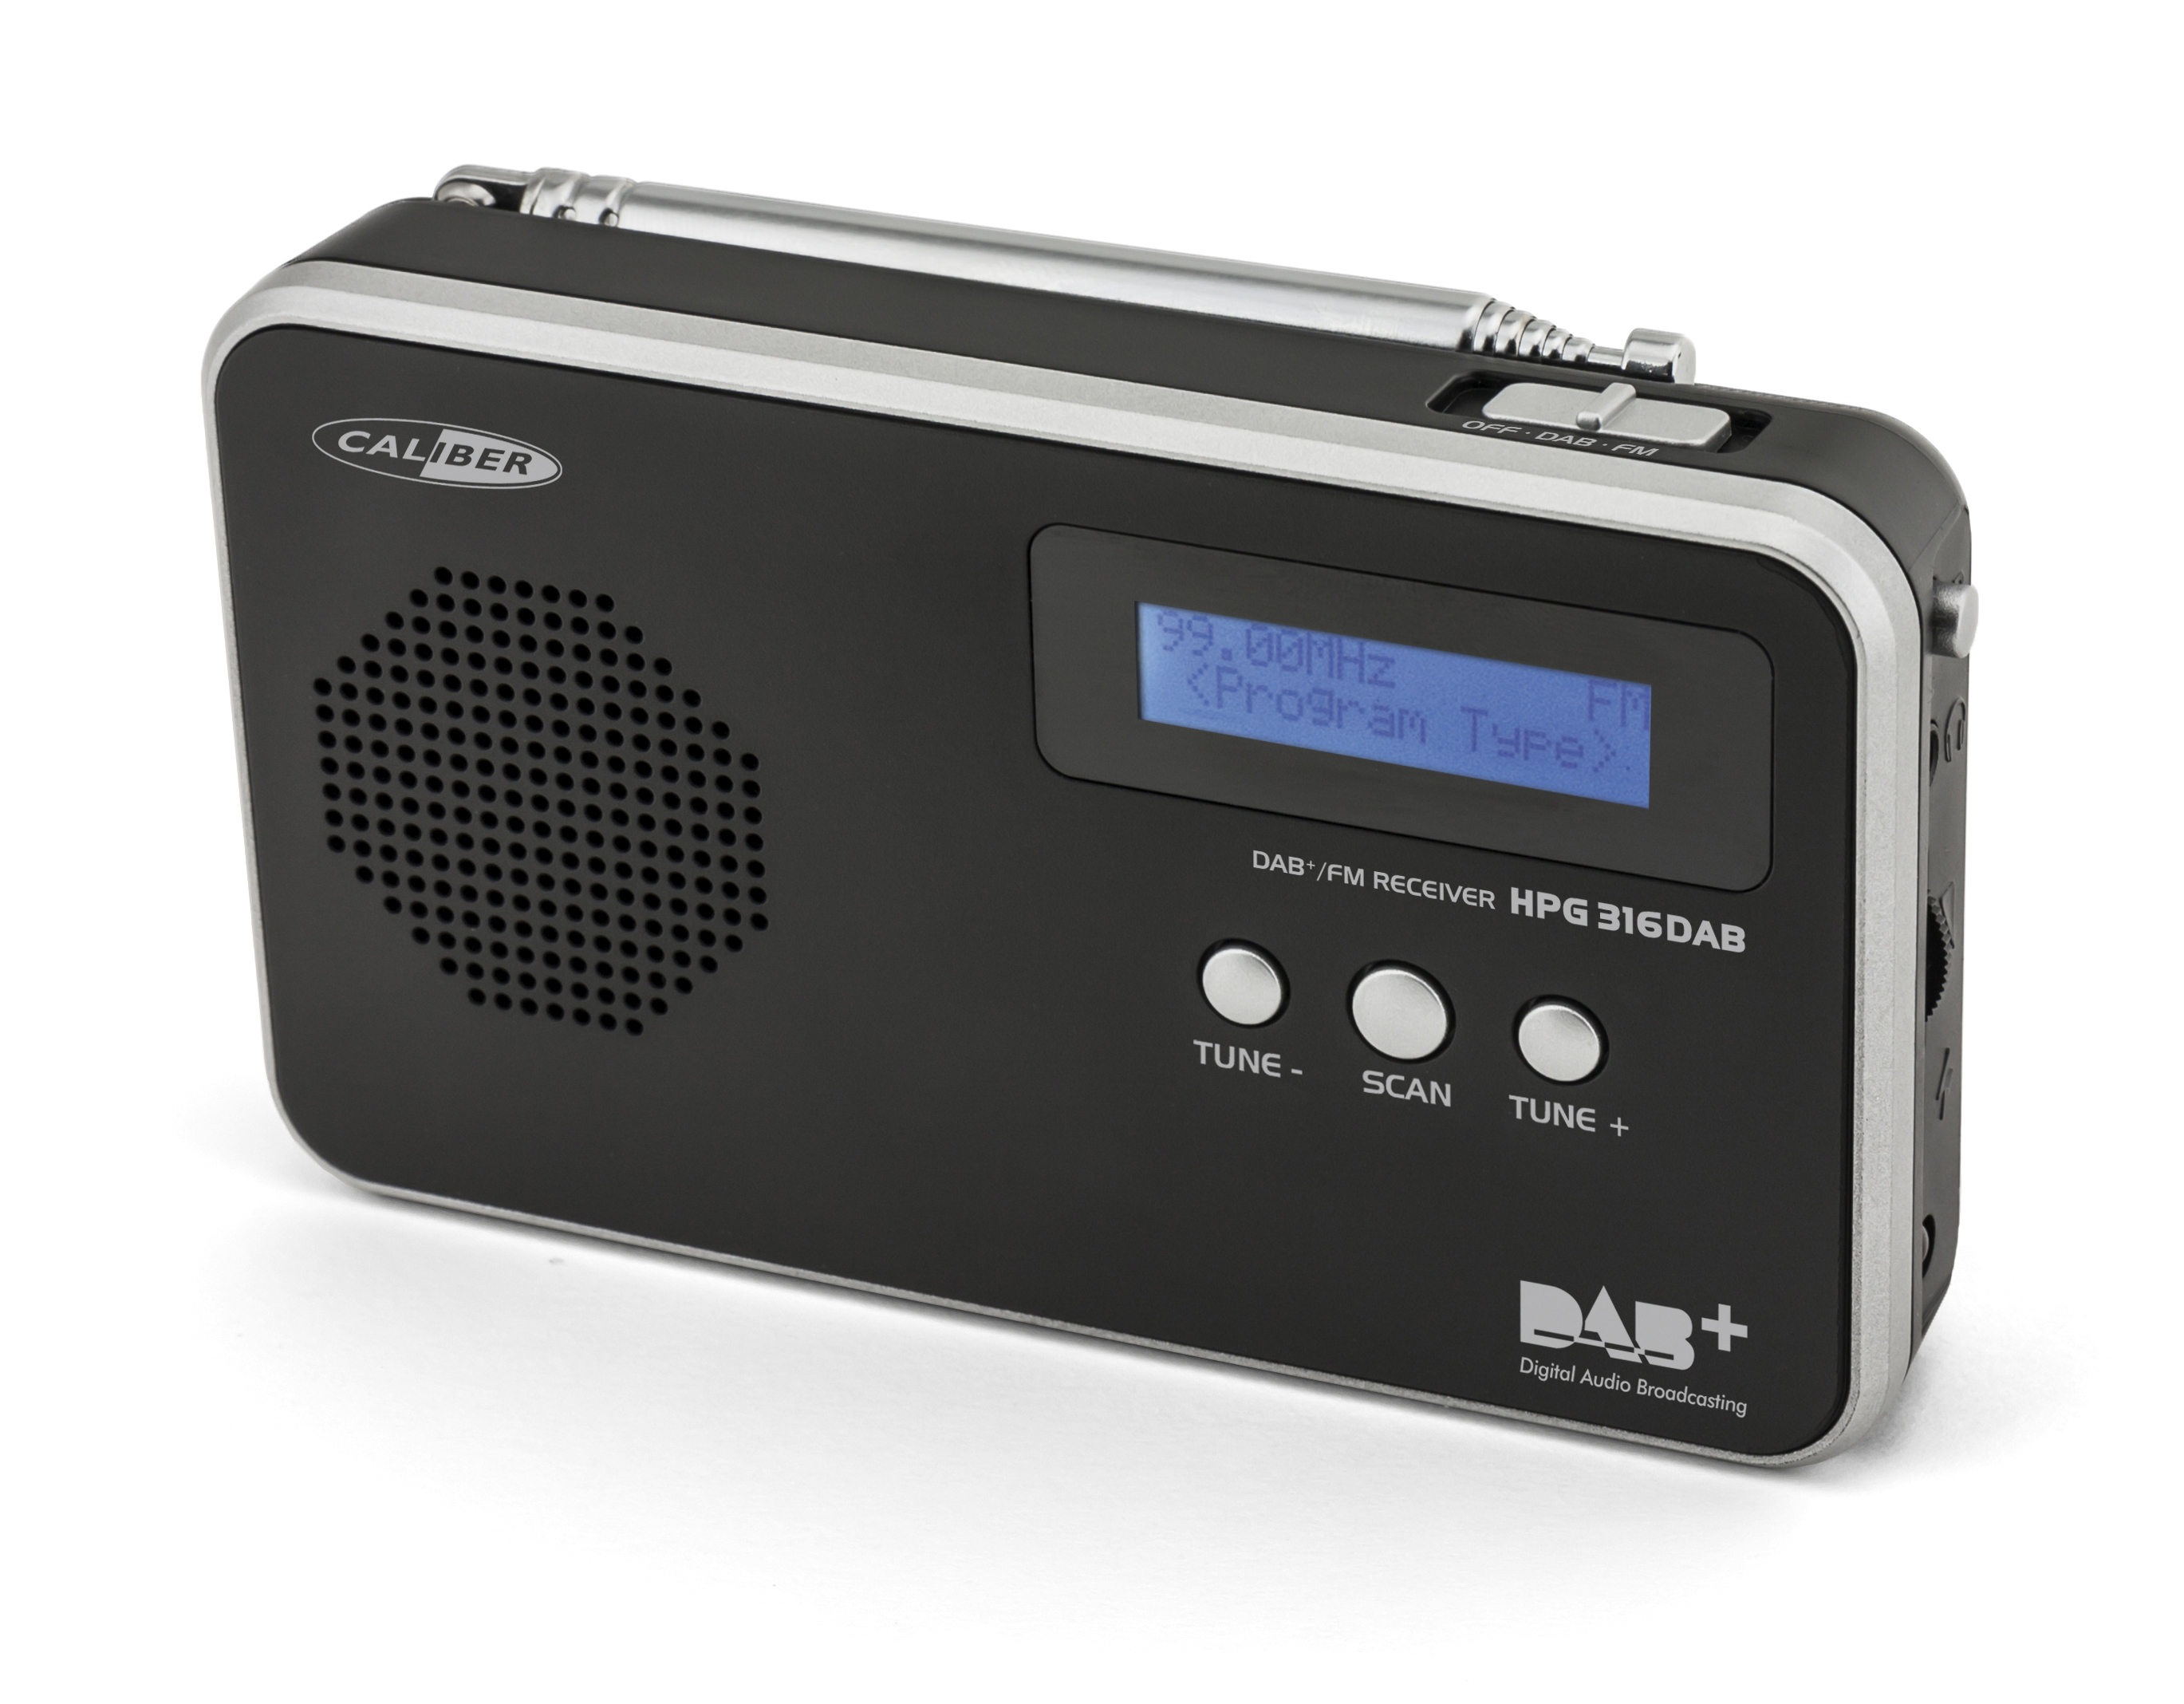 CALIBER HPG316DAB/B DAB+ Schwarz Radio, FM, DAB+, portable